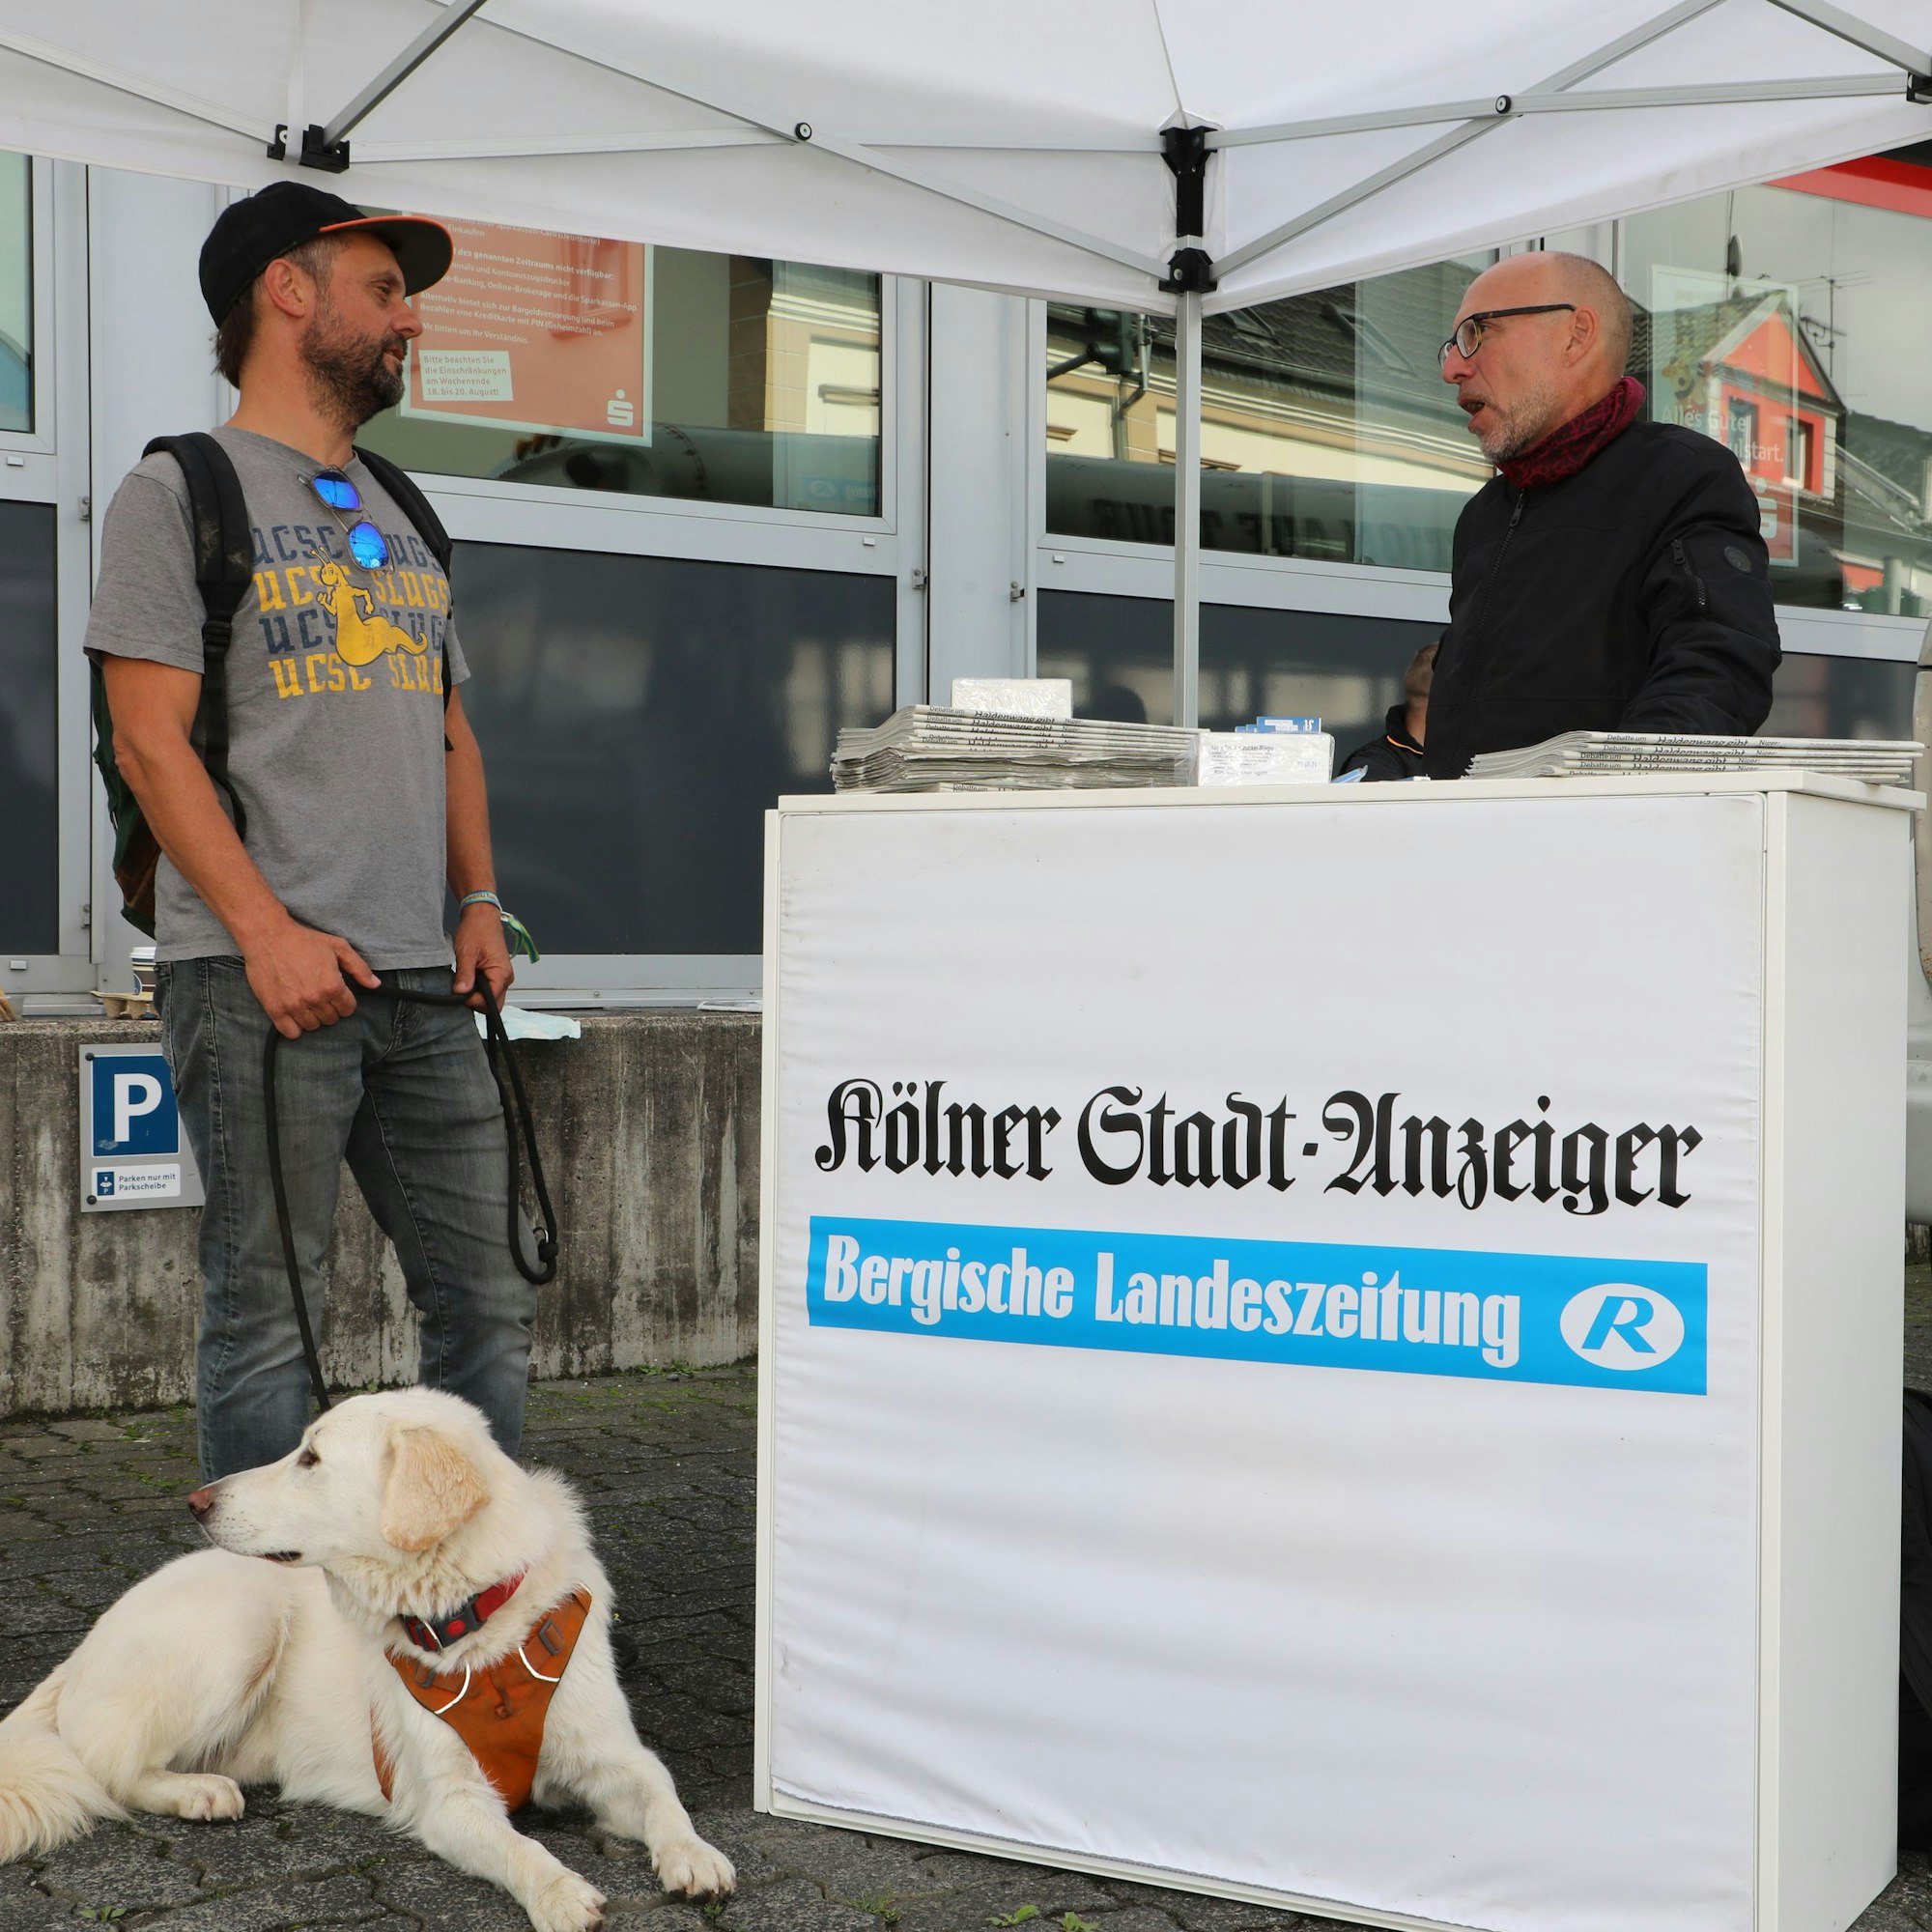 Johannes Thies mit Hund Baschko steht am Infostand der Lokalredaktion bei Redakteur Thomas Rausch.